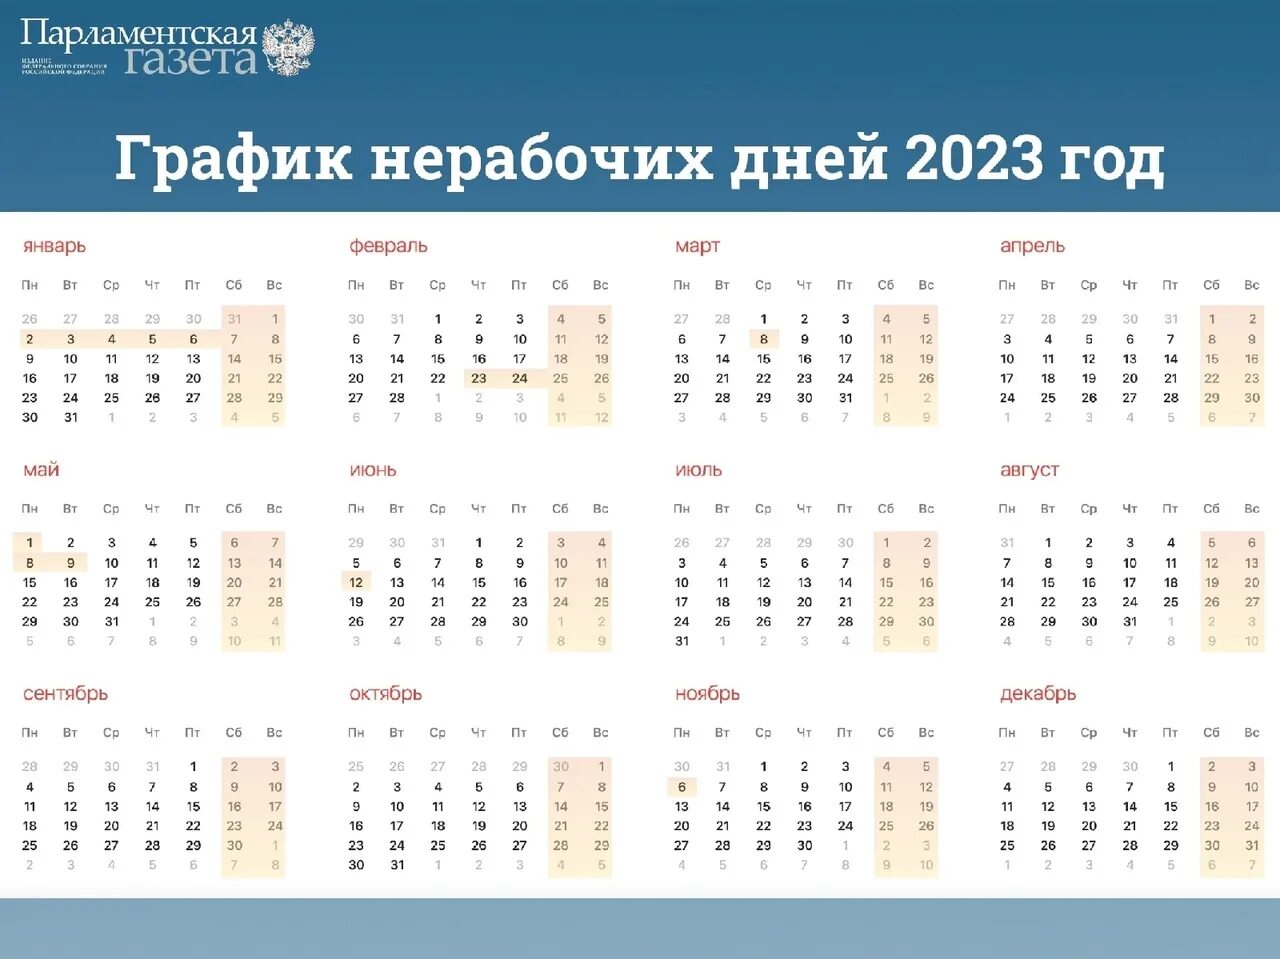 Последний рабочий день в декабре 2023 года. Нерабочие дни в 2023 году. Выходные и праздничные дни в 2023. Выходные и праздничные дни в 2023 году. Календарные праздники на 2023 год.